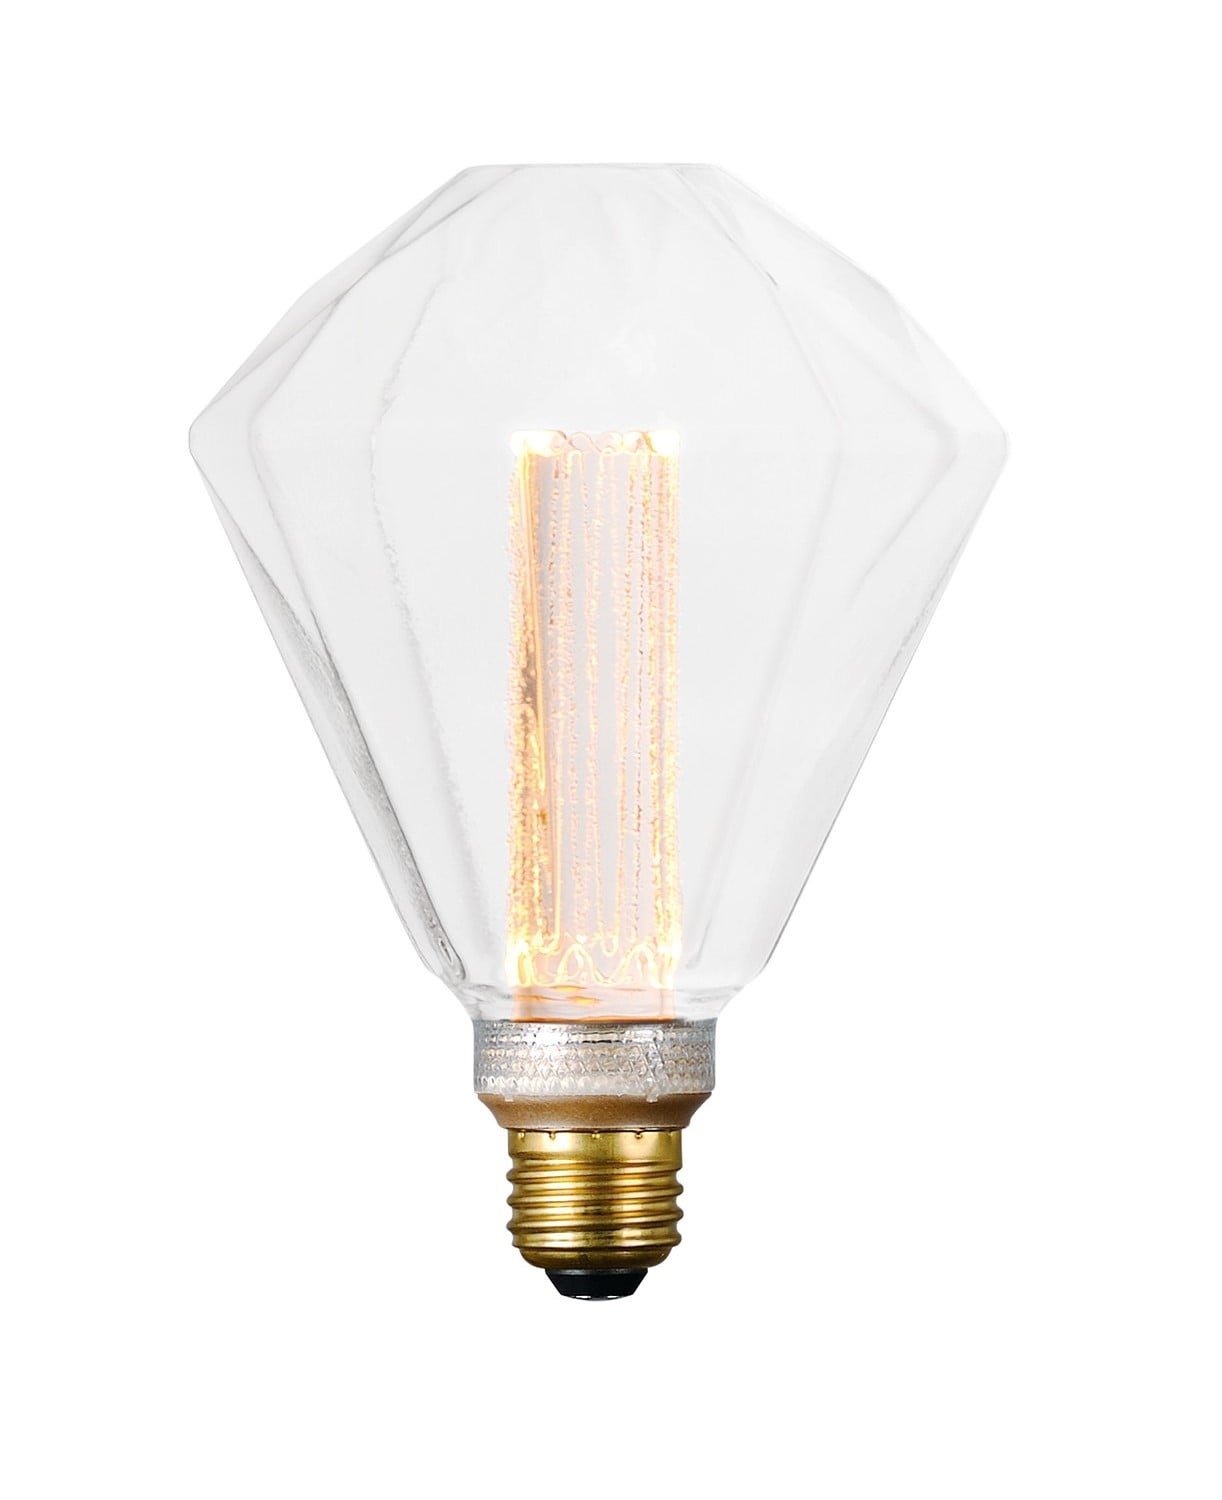 20-Watt Appliance Light Bulb